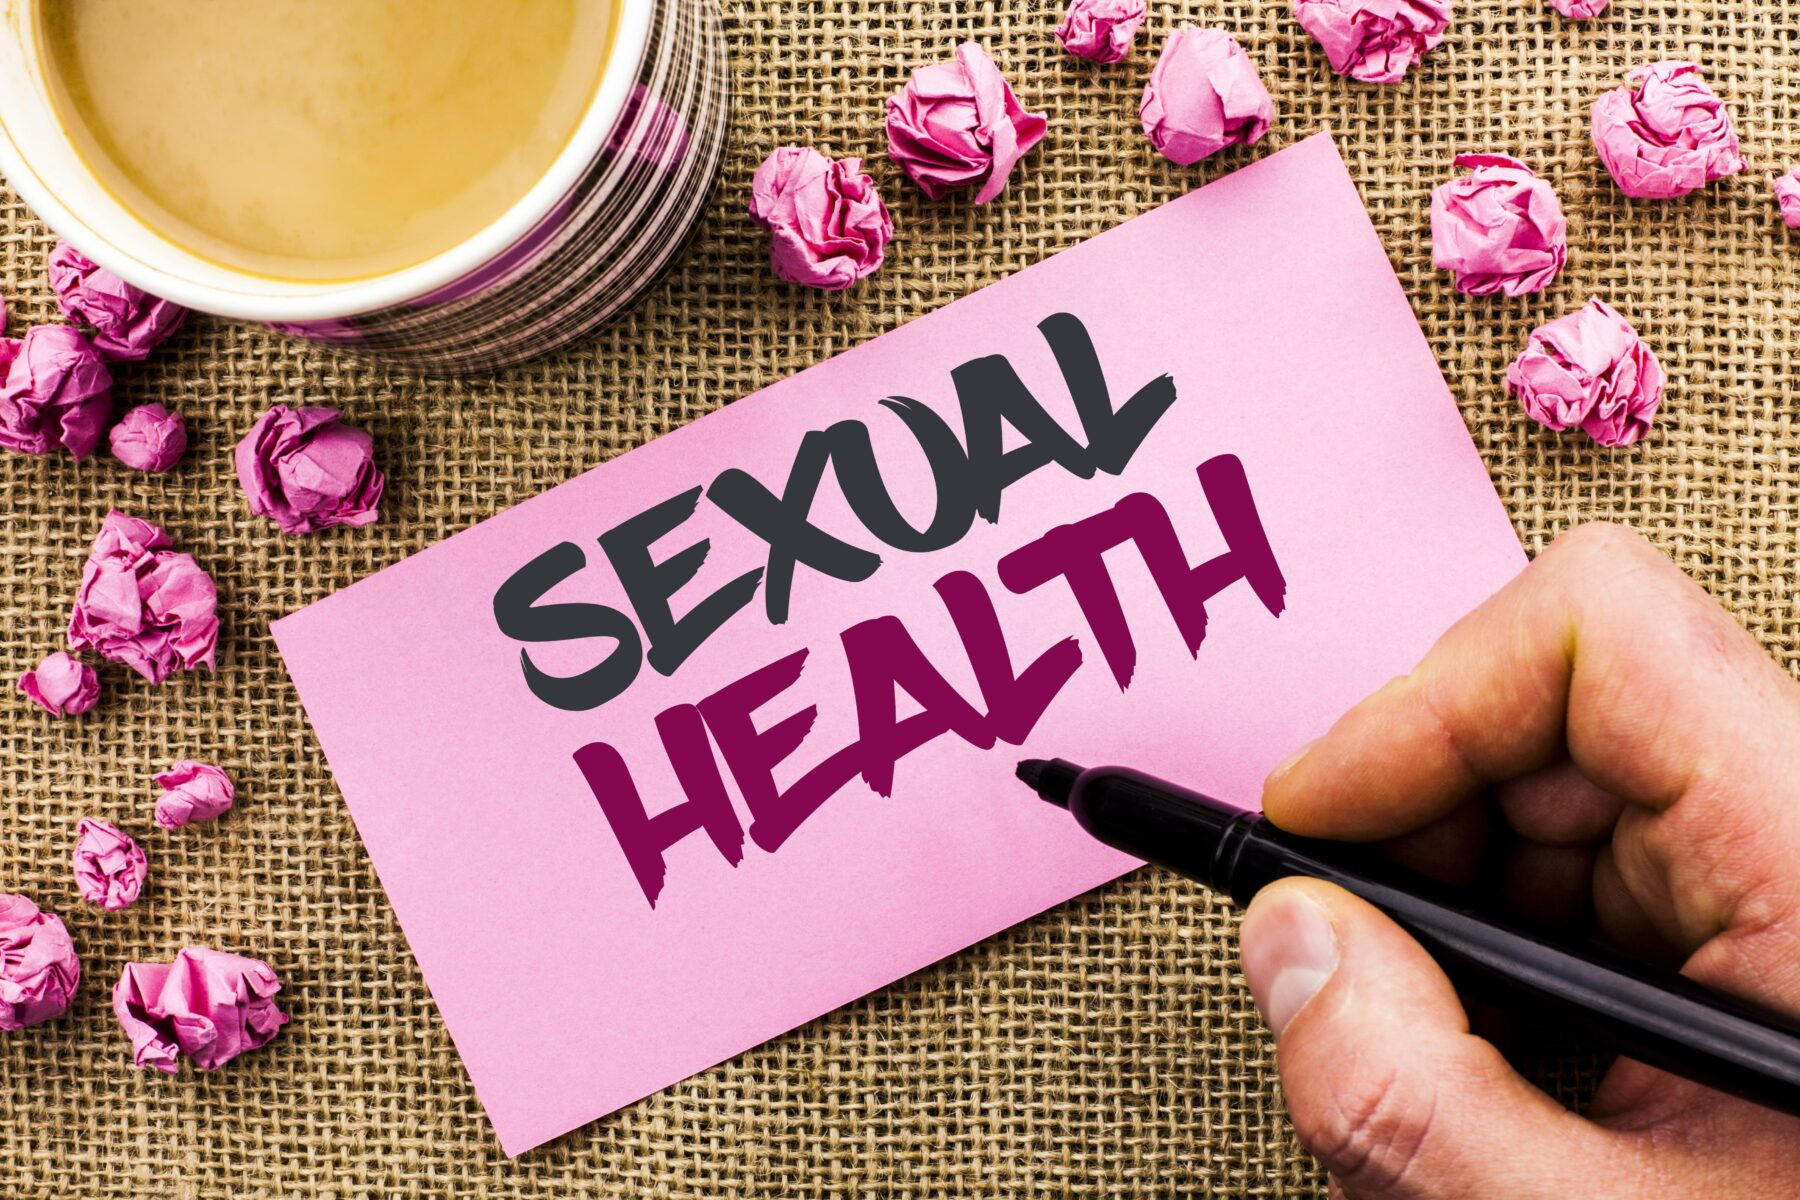 Σεξ: Πώς μπορούμε να φροντίσουμε την σεξουαλική υγεία μας;